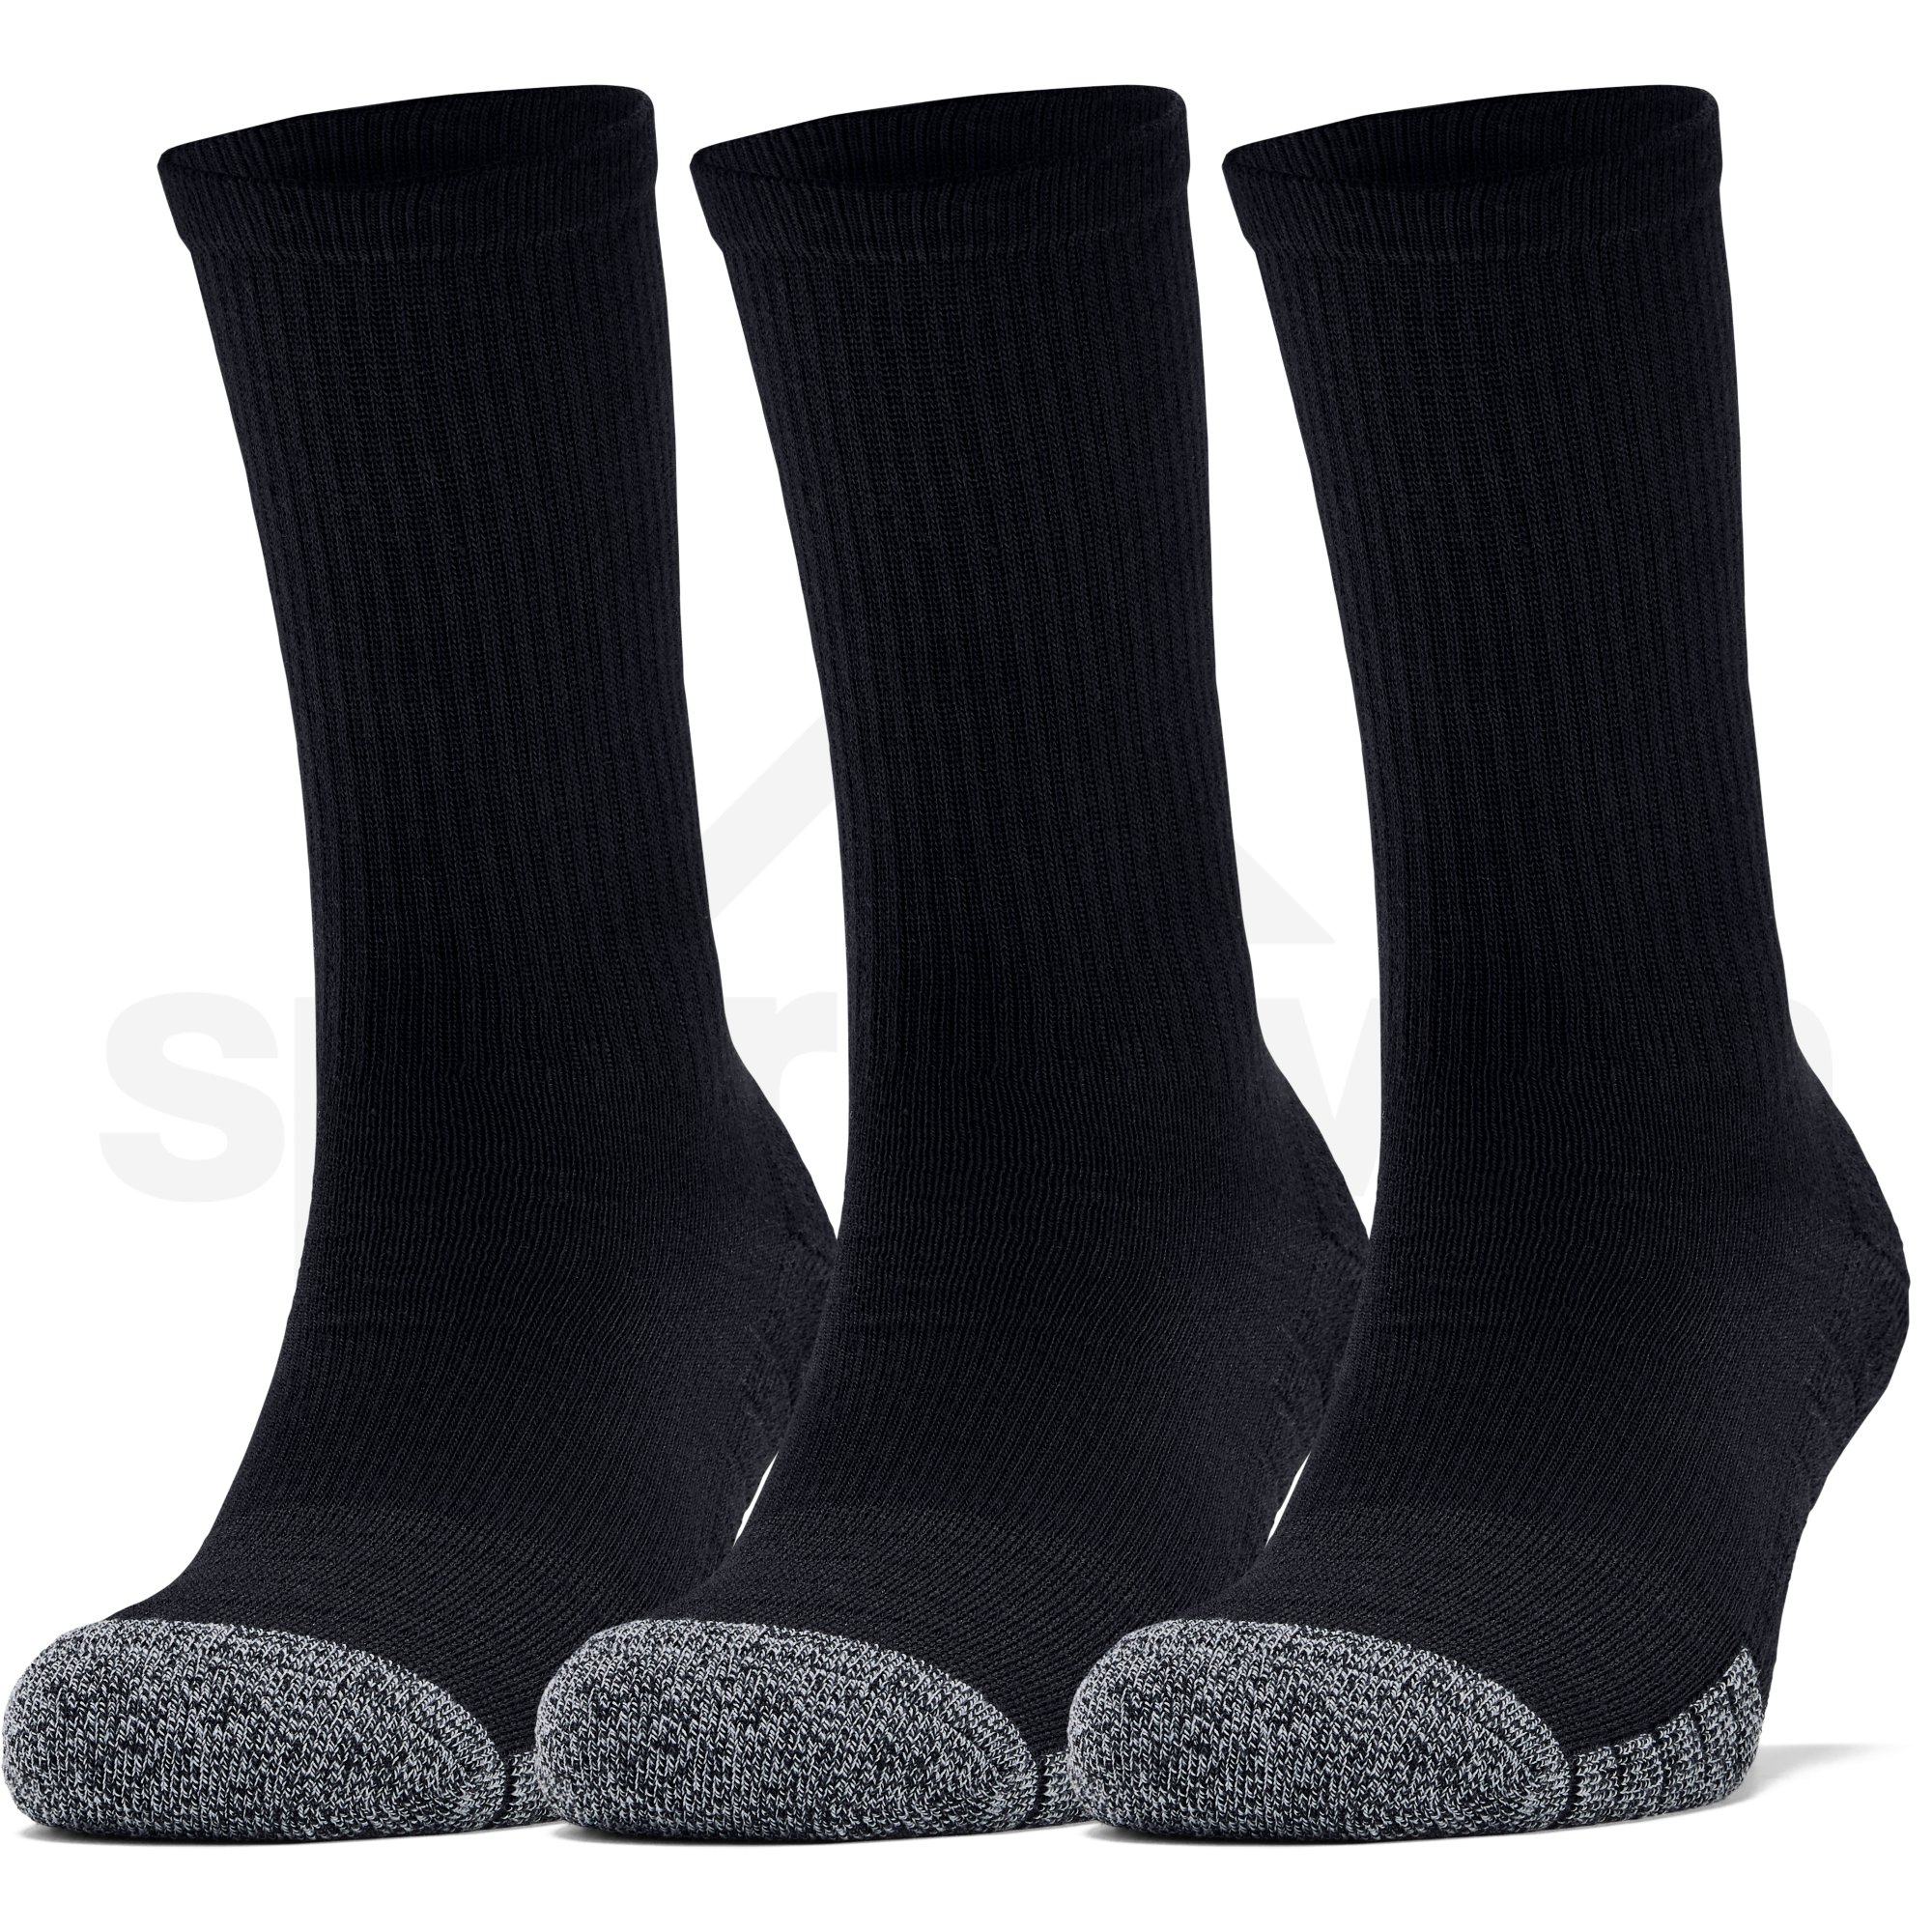 Ponožky Under Armour Heatgear Crew - černá/šedá